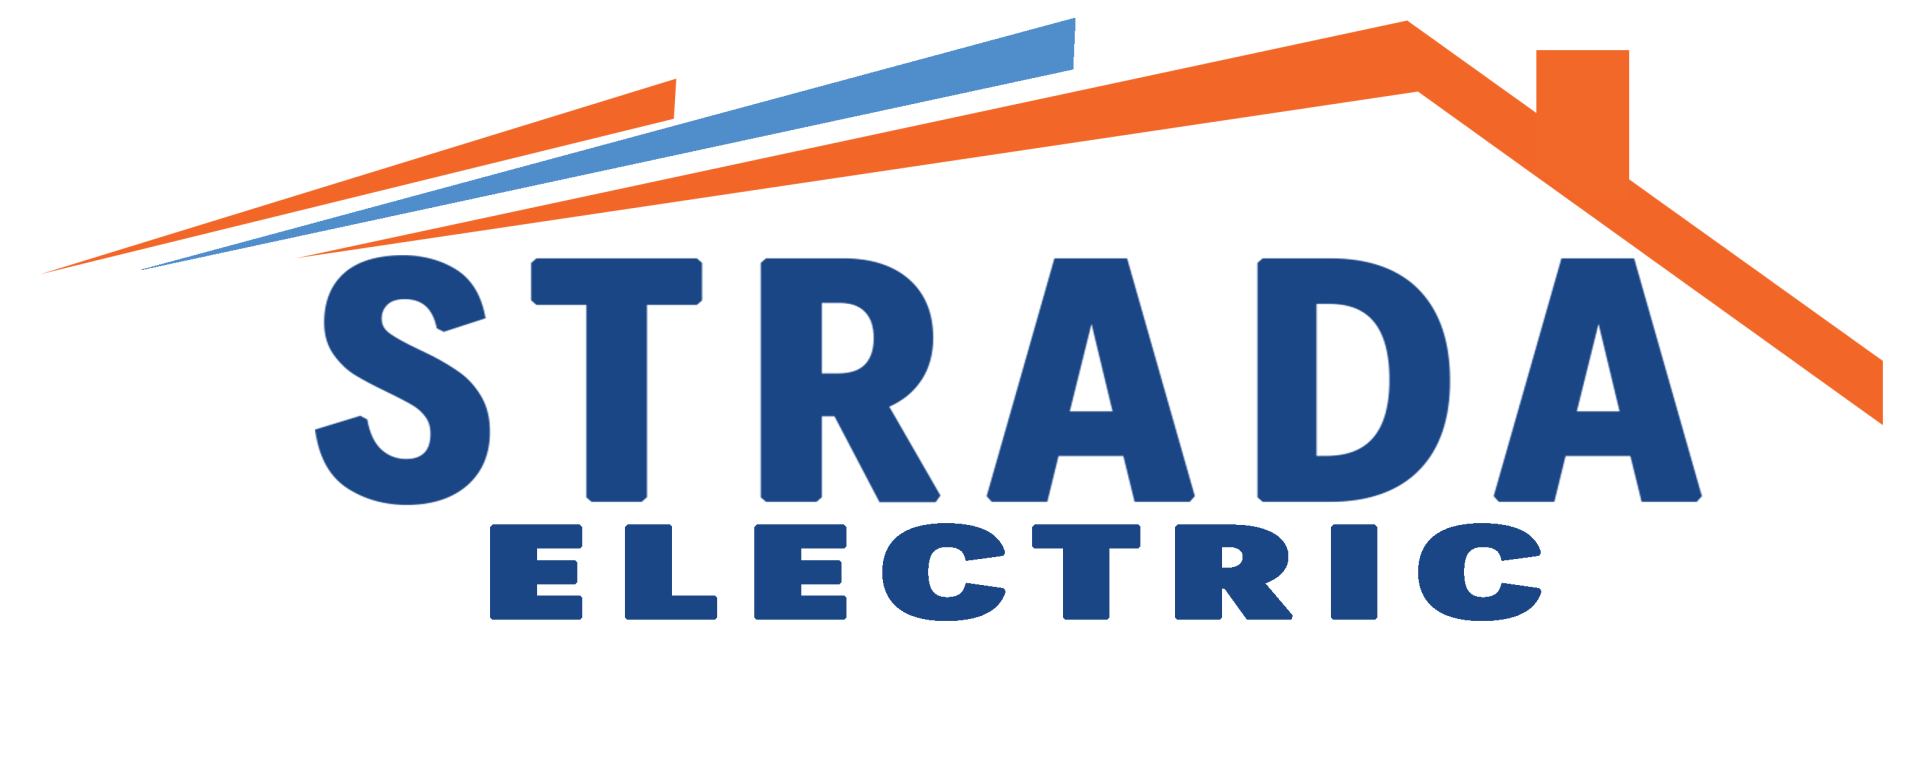 Un logotipo que reza &quot;Strada Electric&quot; con un techo azul y naranja.